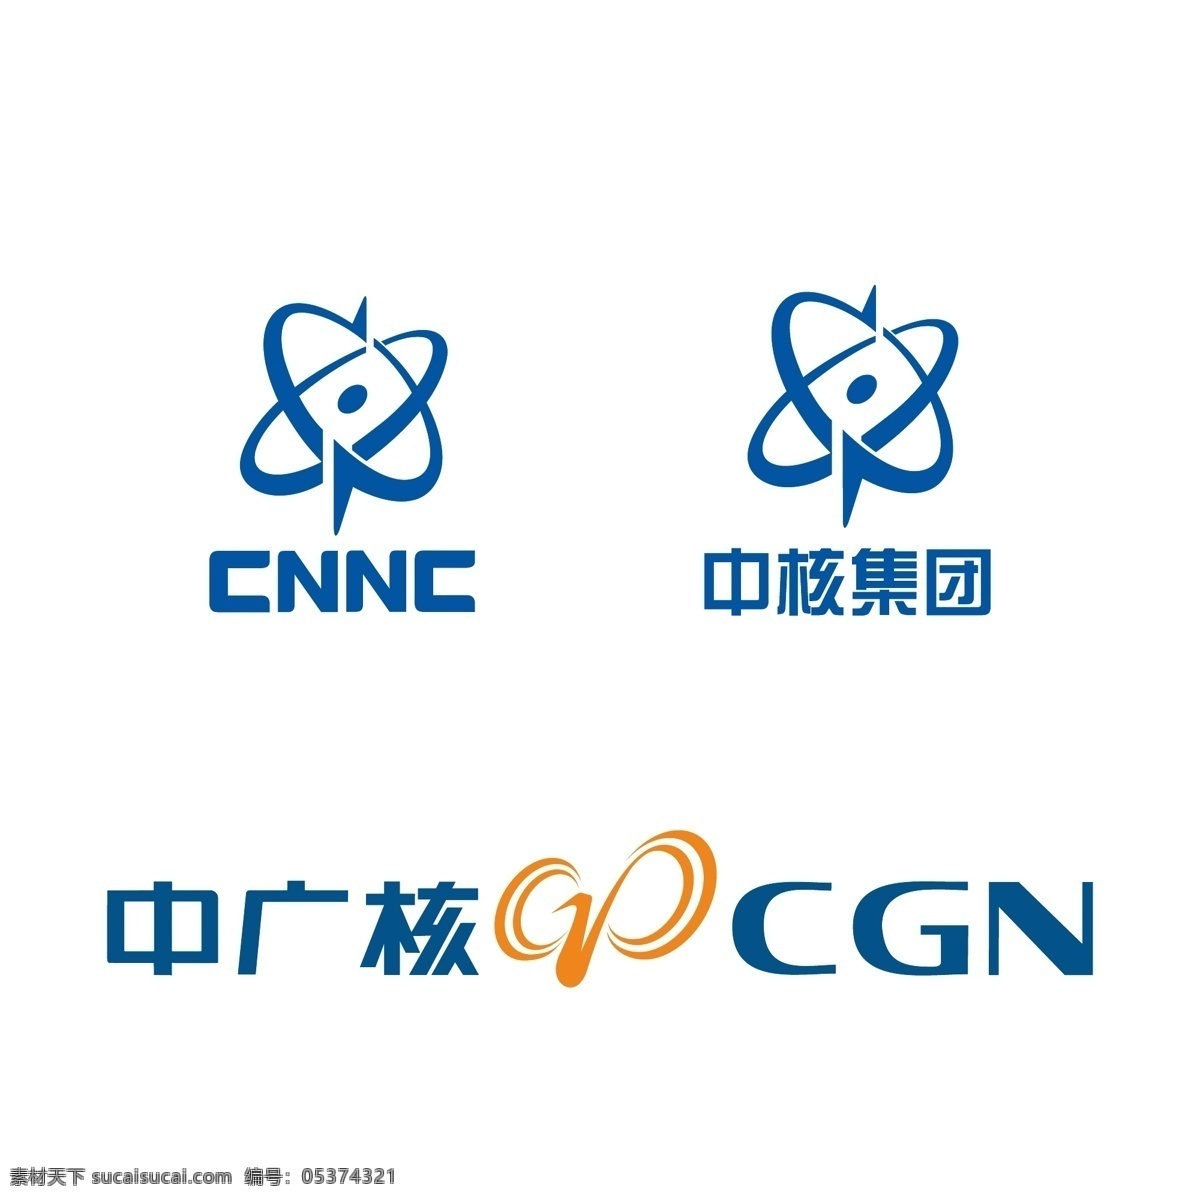 中核 中广核图片 中广核 logo 标志 中广核cgn 中国核电 中核集团 cnnc 标志图标 企业